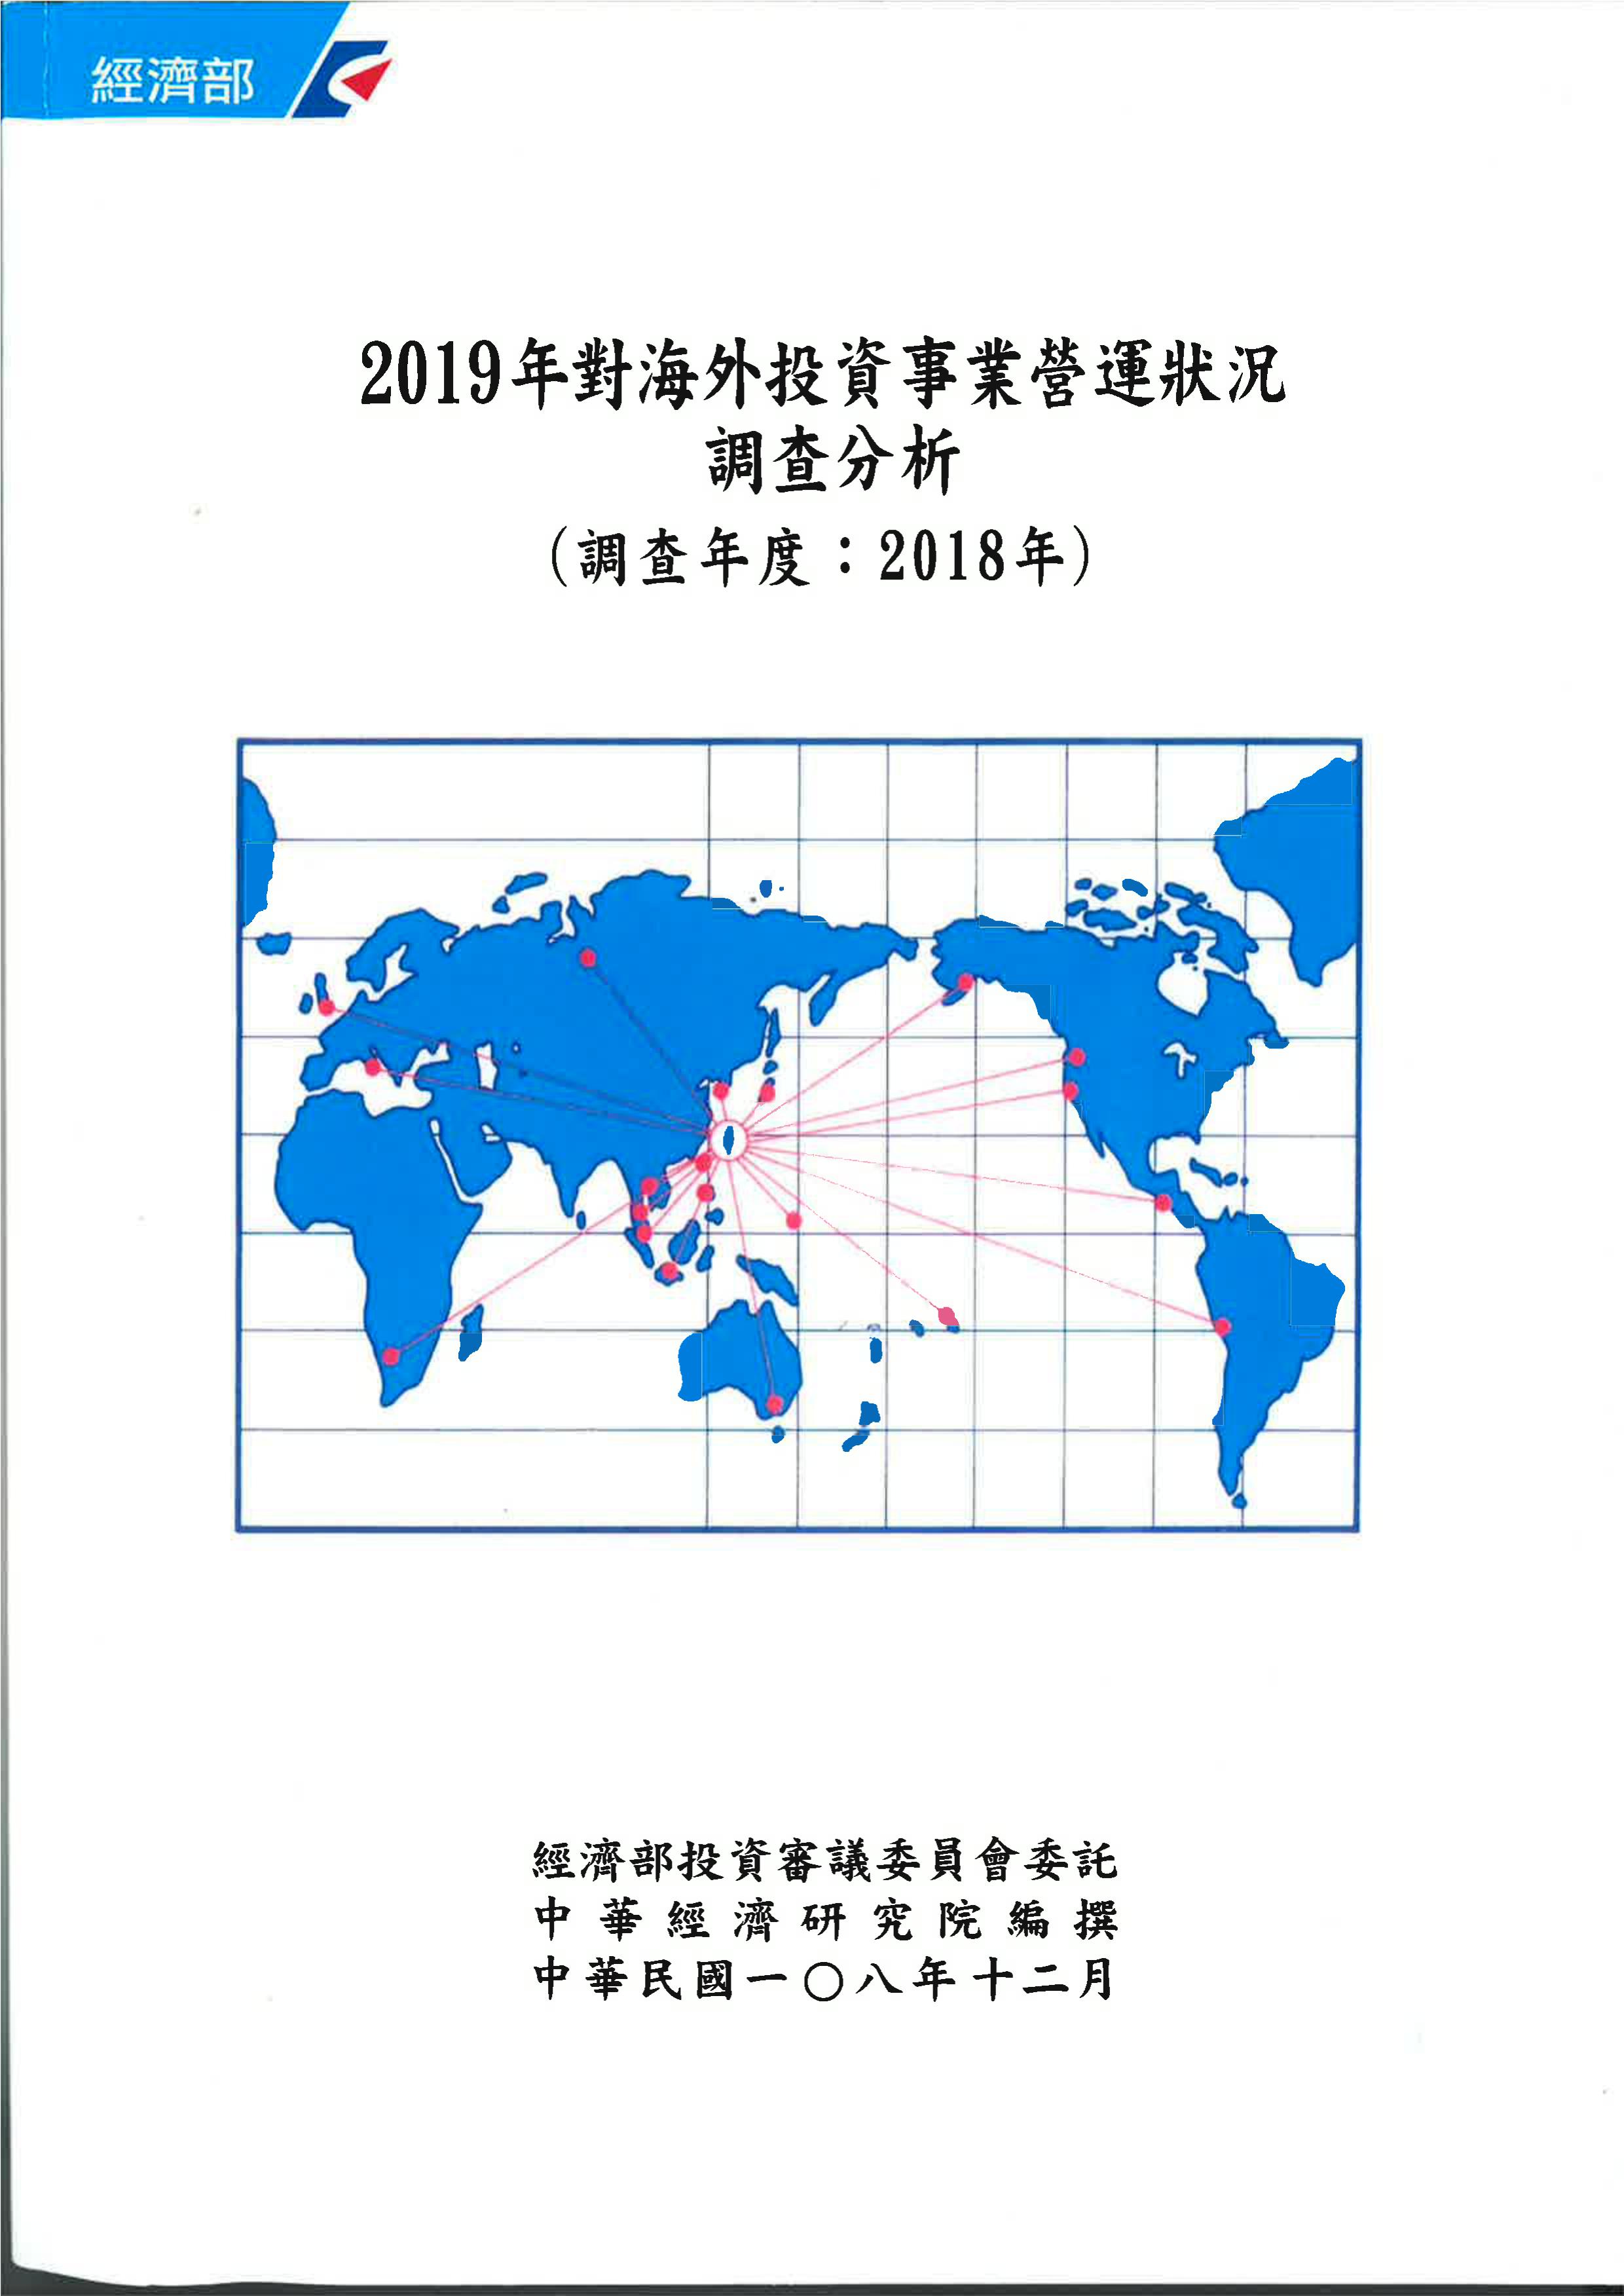 2019年對海外投資事業營運狀況調查分析(調查年度2018年)